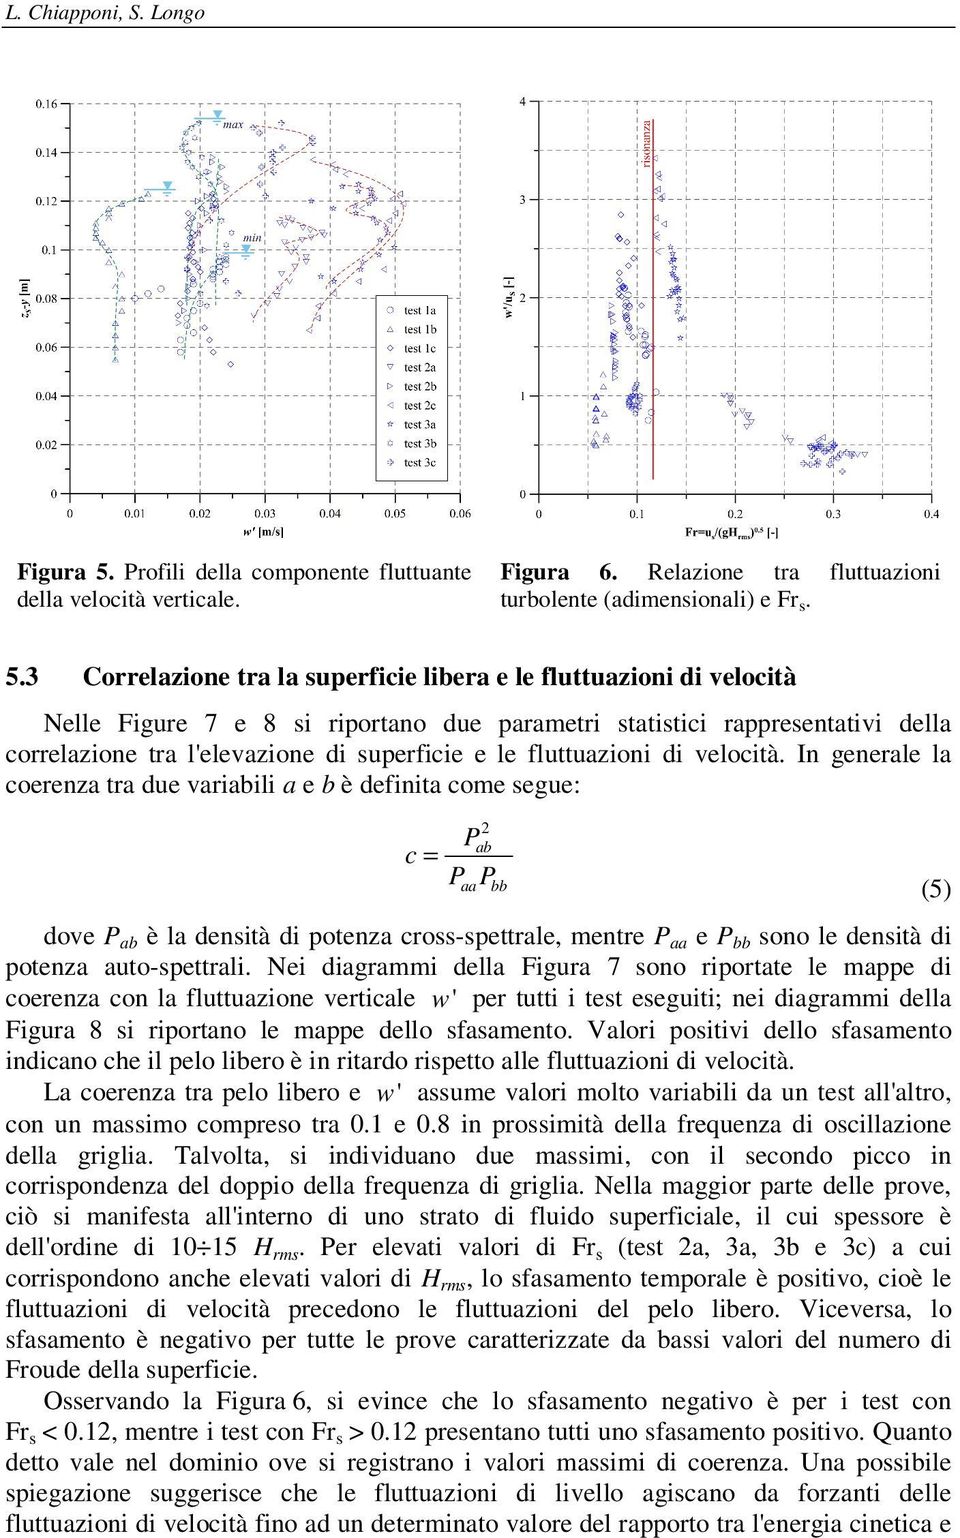 3 Correlazione tra la superficie libera e le fluttuazioni di velocità Nelle Figure 7 e 8 si riportano due parametri statistici rappresentativi della correlazione tra l'elevazione di superficie e le